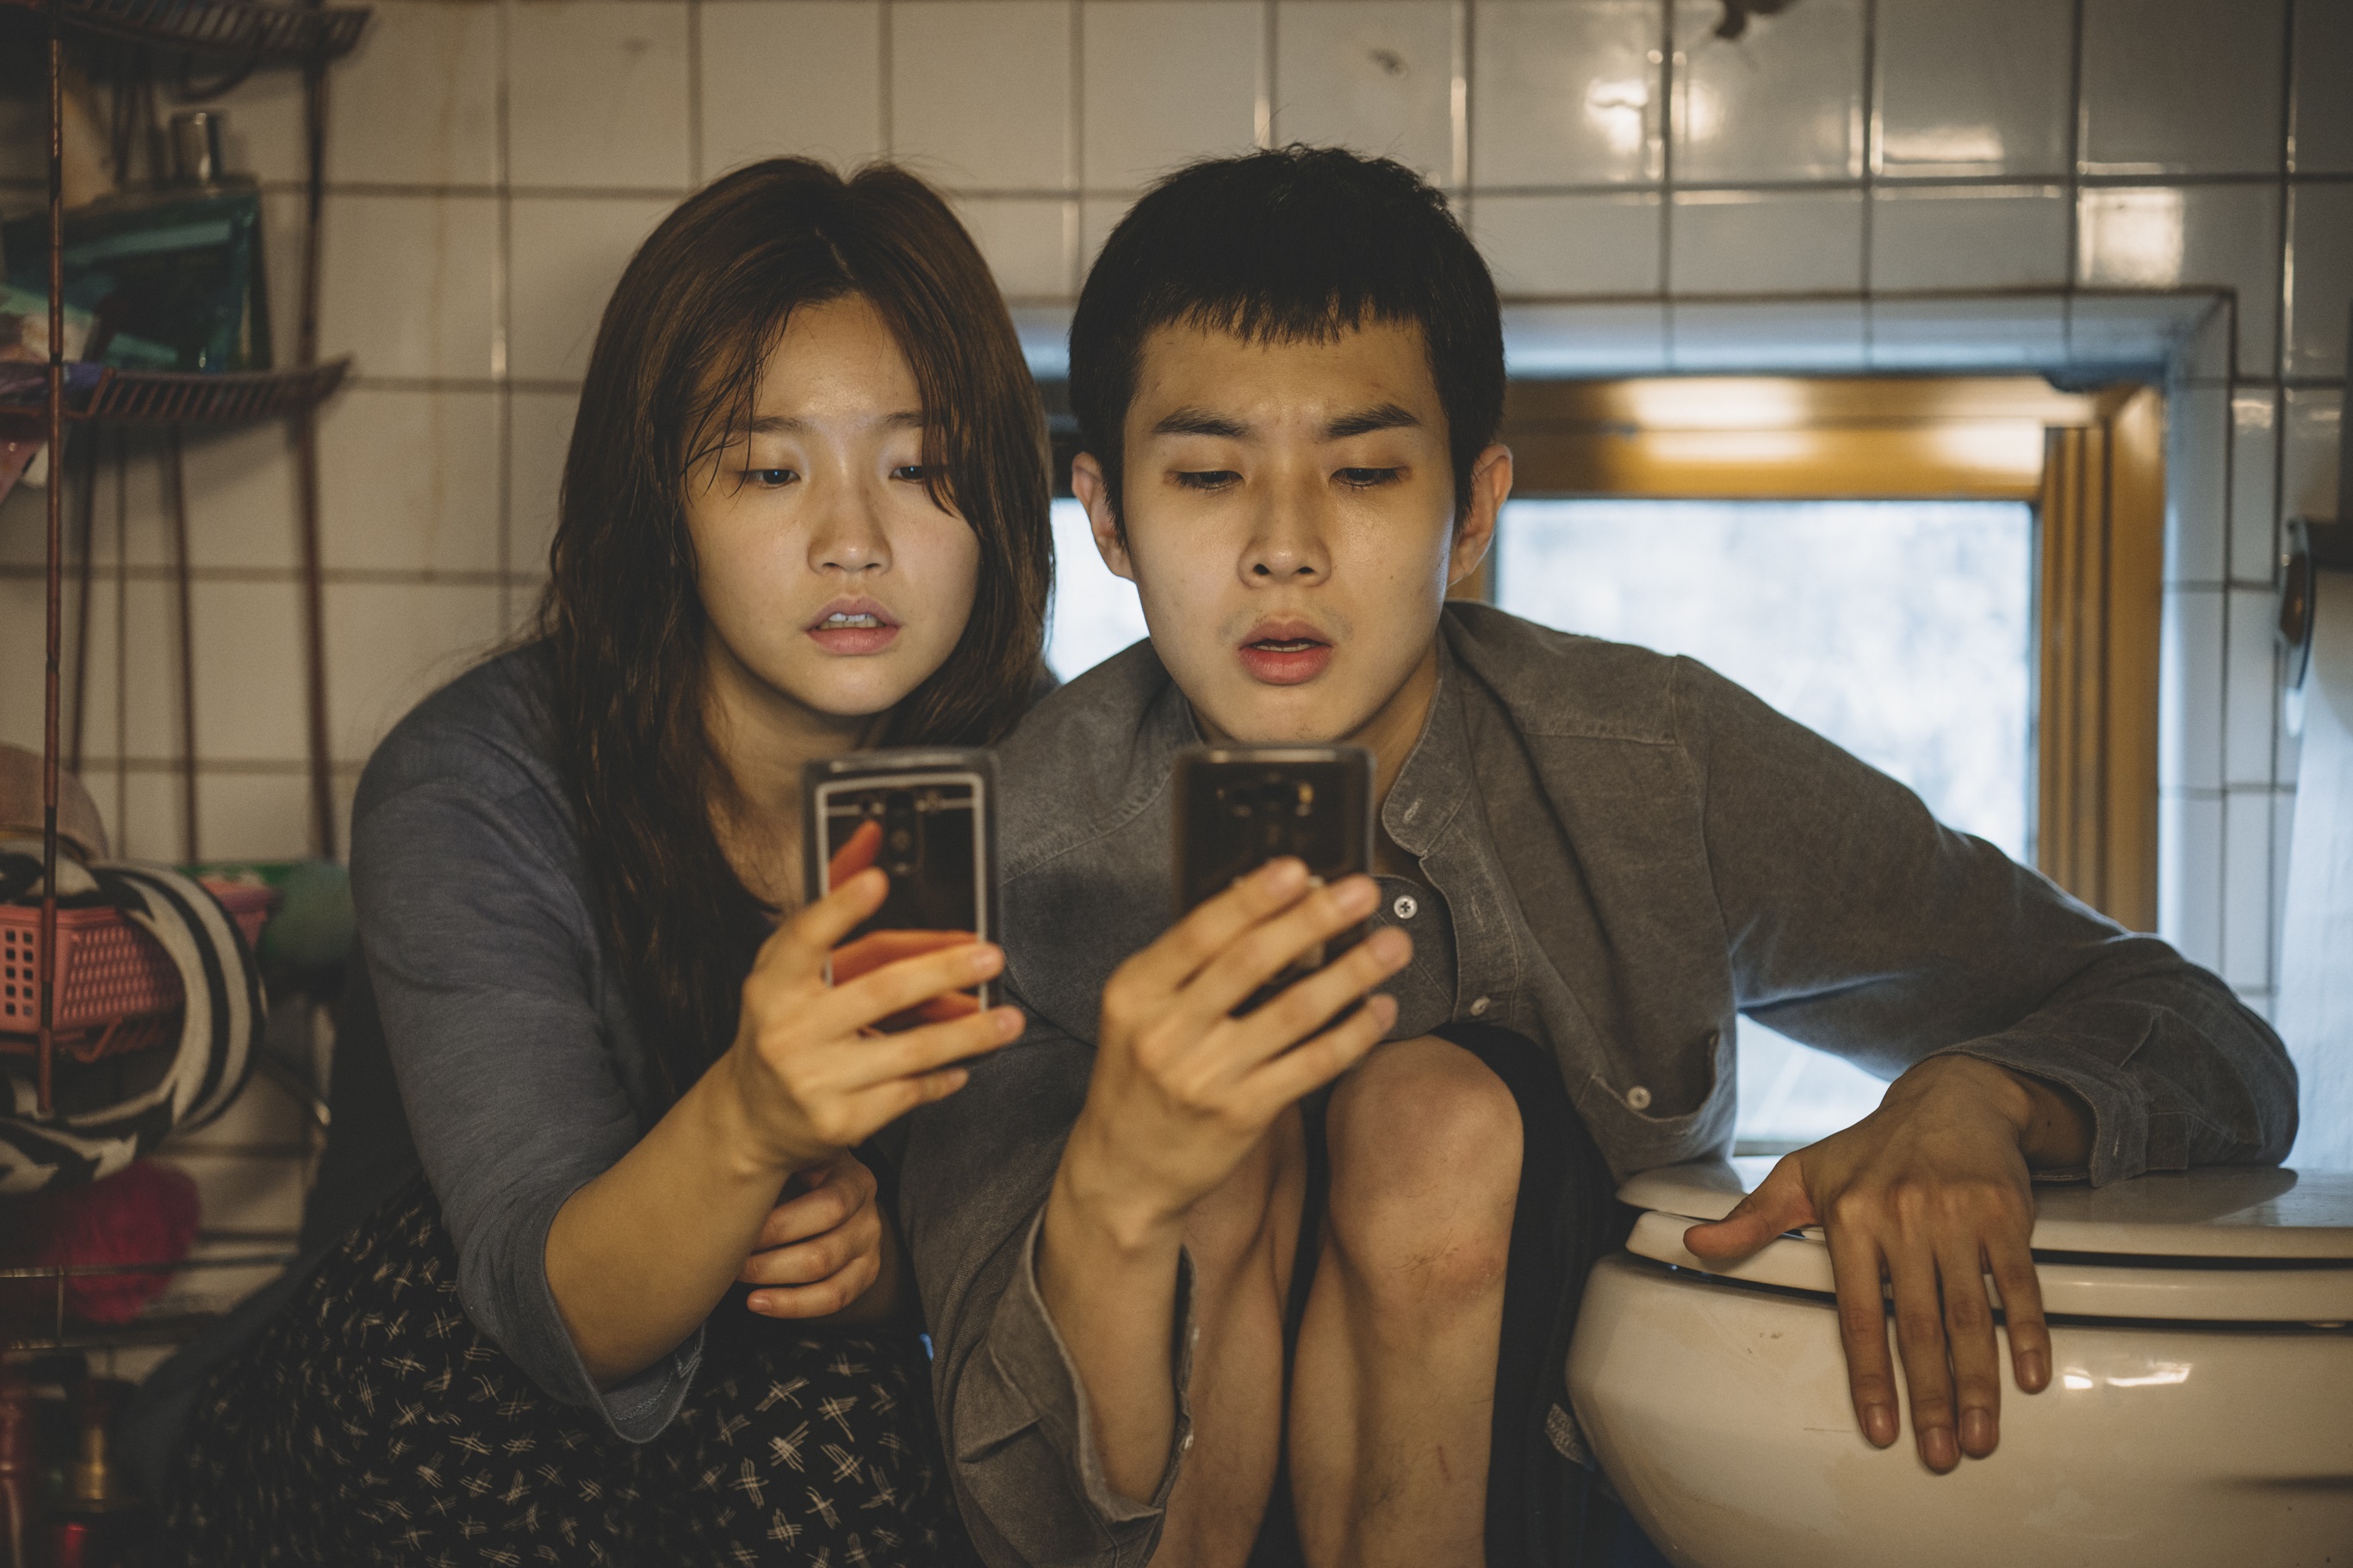 破奧斯卡紀錄 韓國電影《寄生上流》獲六項大獎提名